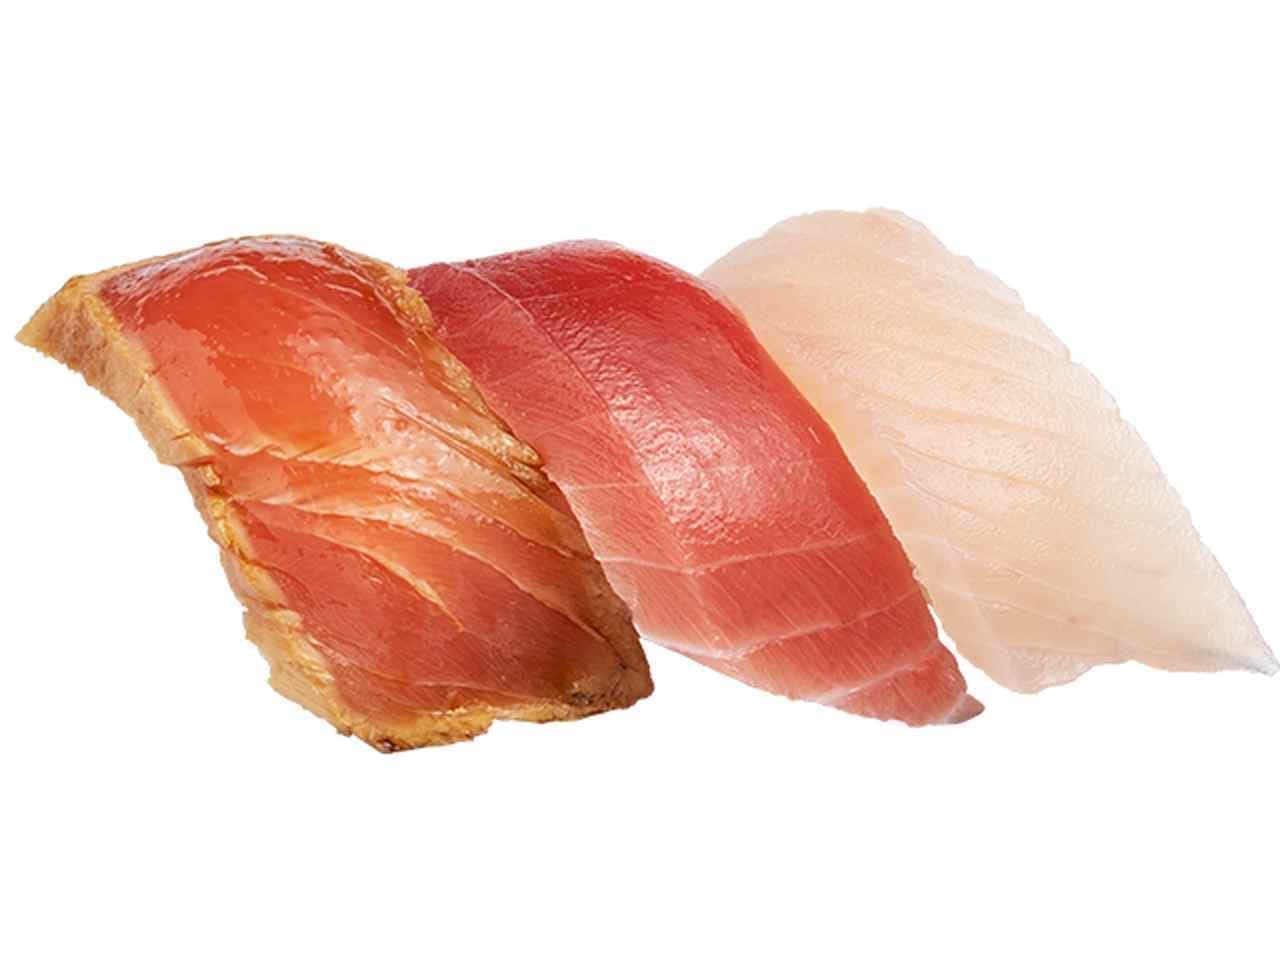 Kappa Sushi "Three kinds of tuna